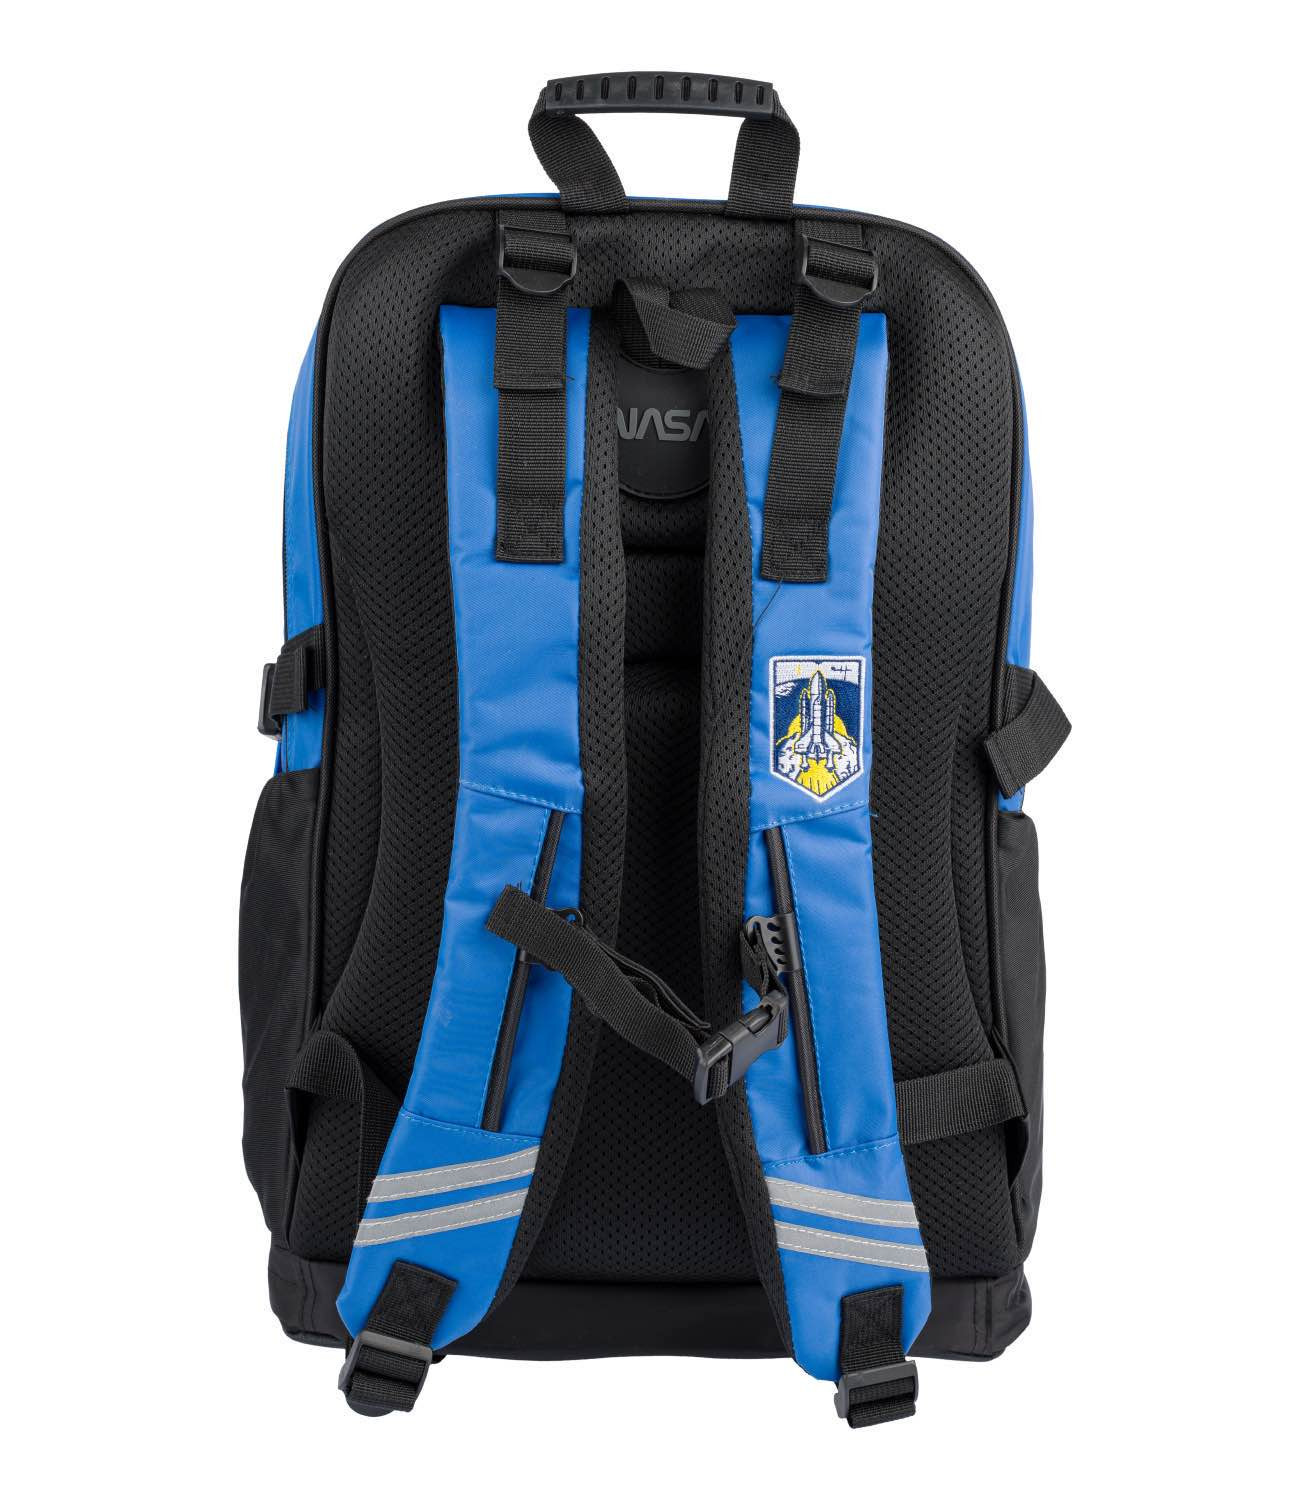 Modročerný voděodolný zipový školní batoh s motivem NASA